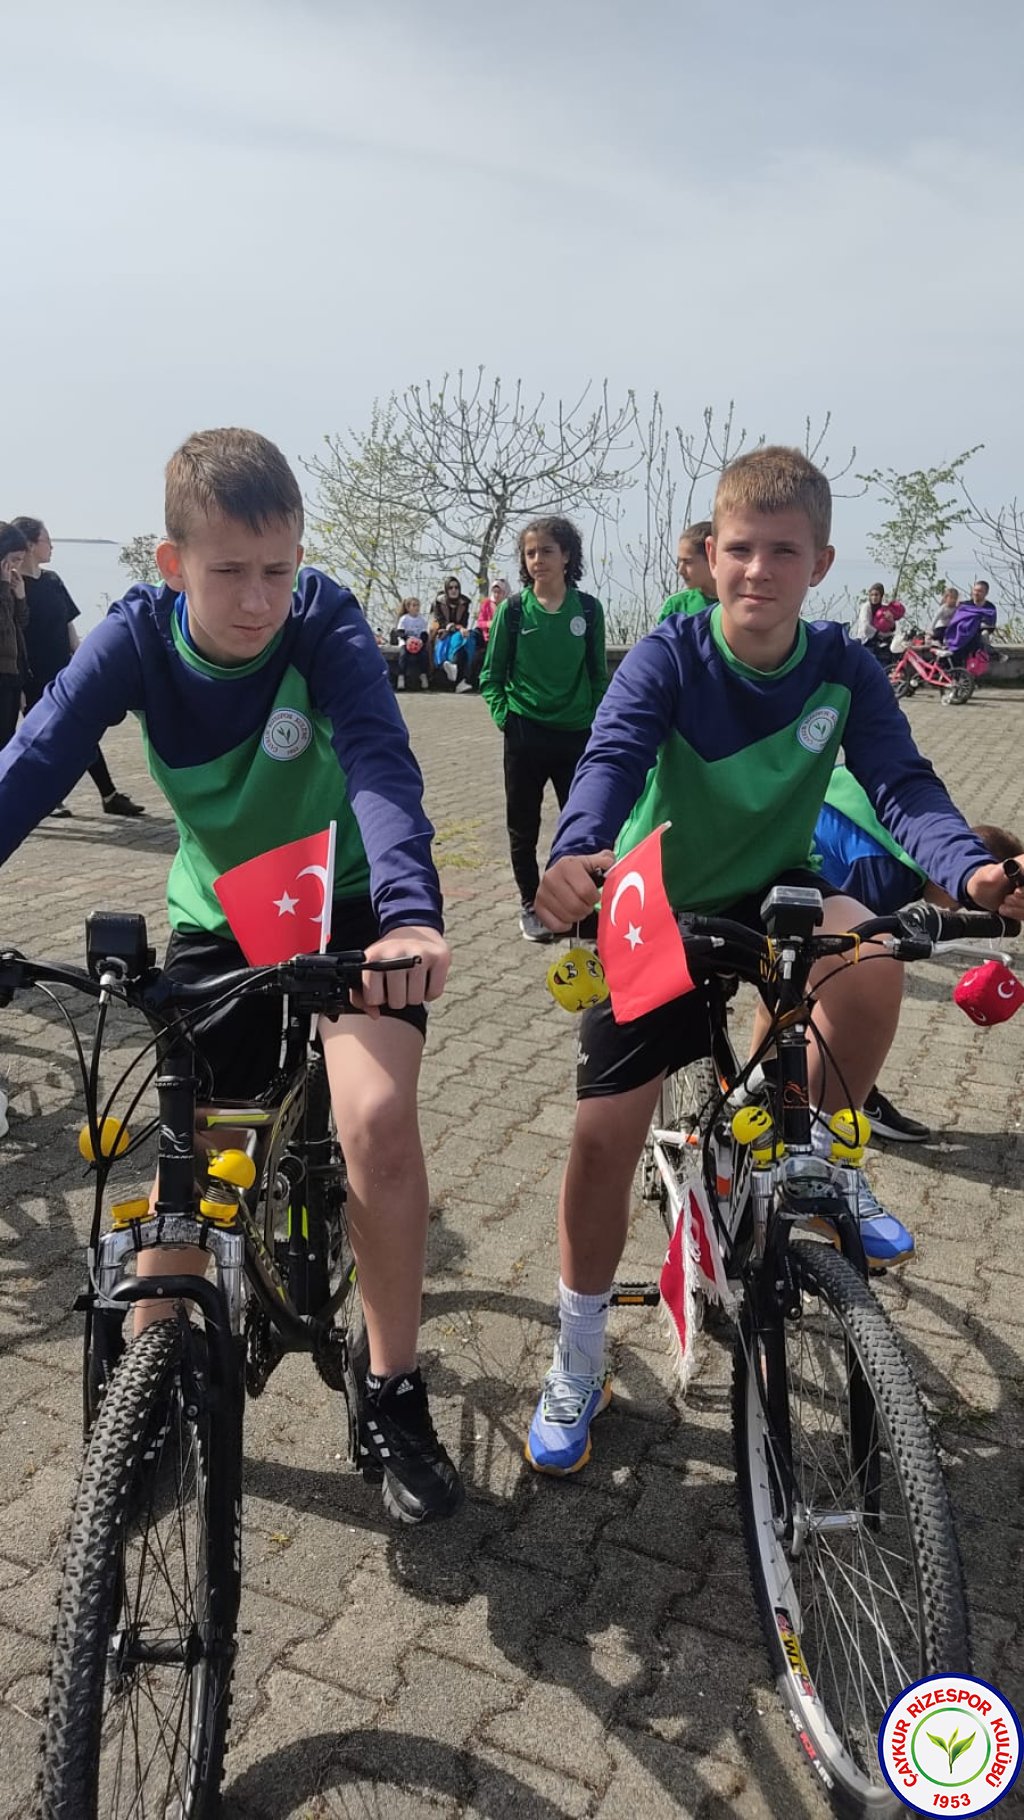 Rizespor Akademi 23 Nisan Bisiklet Turu büyük bir coşkuyla yapıldı.